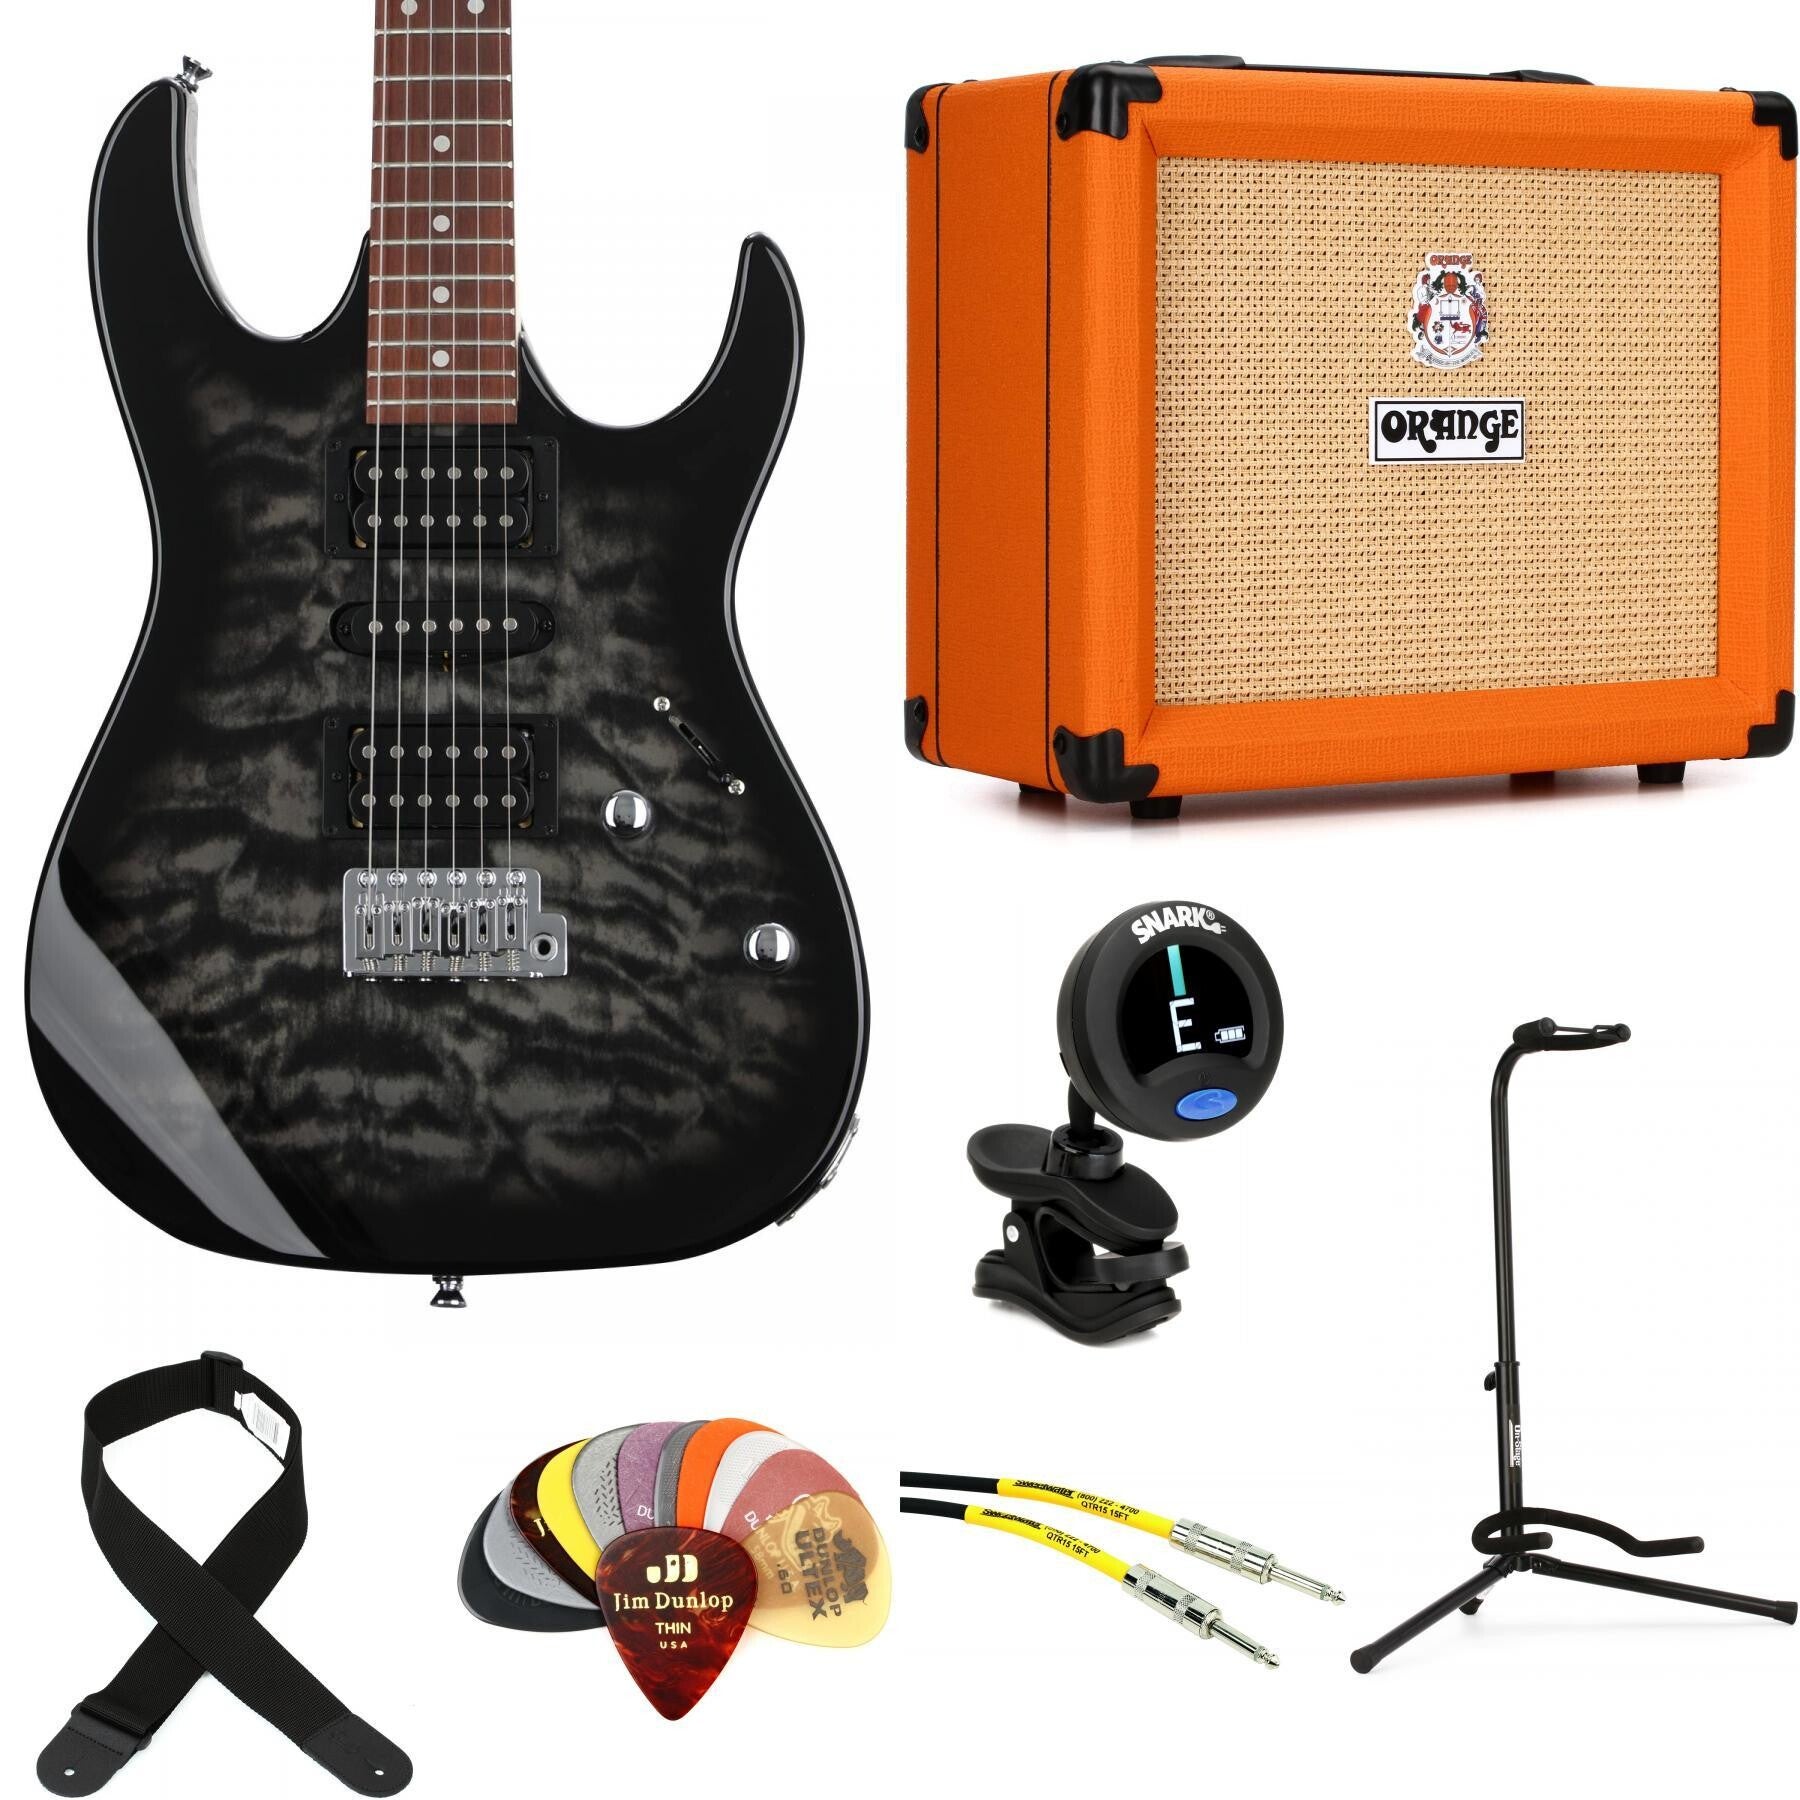 Ibanez Gio GRX70QA Electric Guitar and Orange Crush 20 Amp Essentials  Bundle - Transparent Black Burst